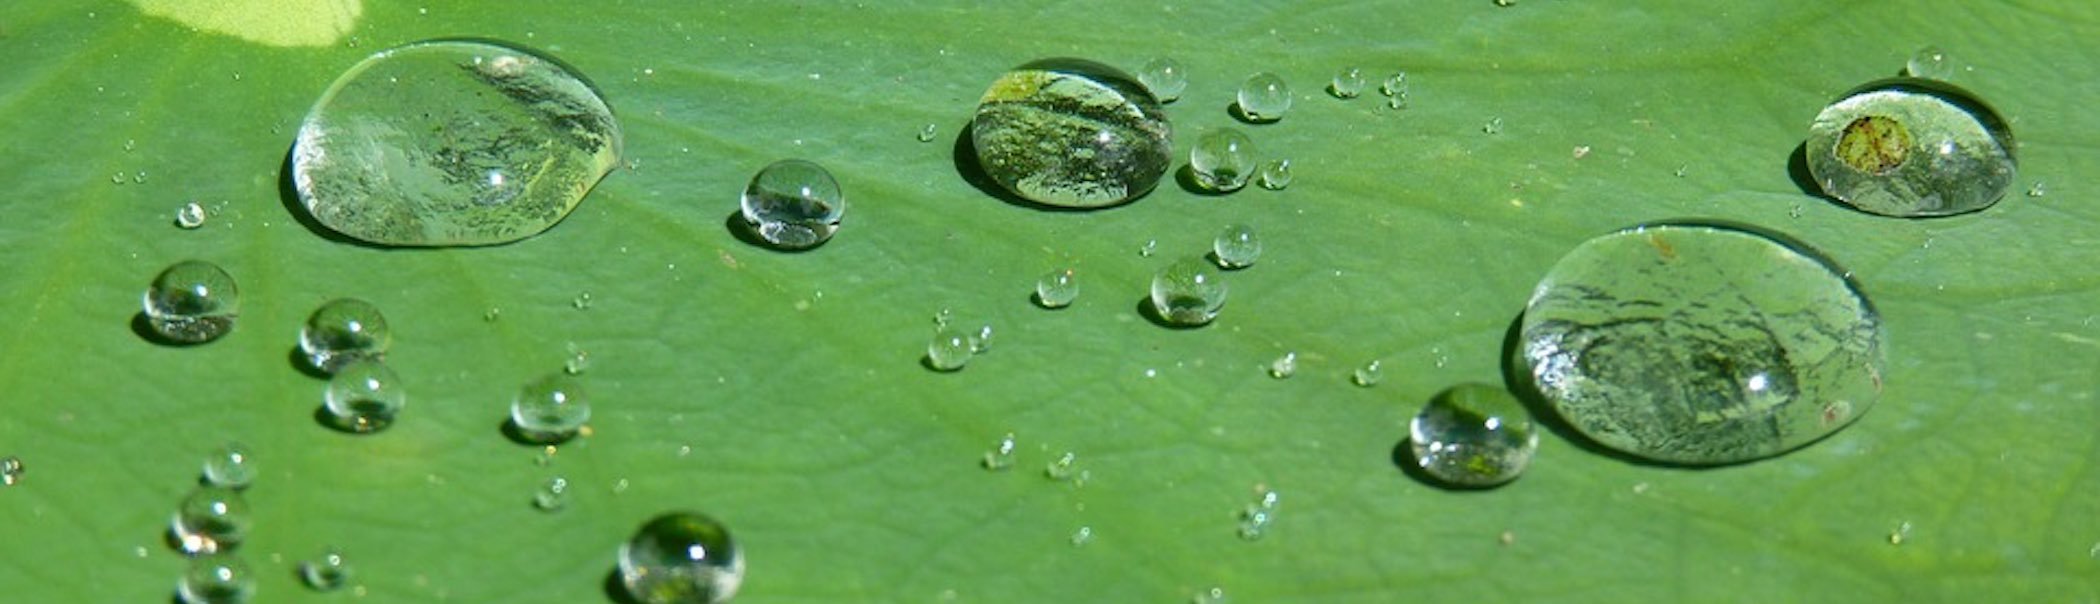 Xl raindrops on lotus leaf